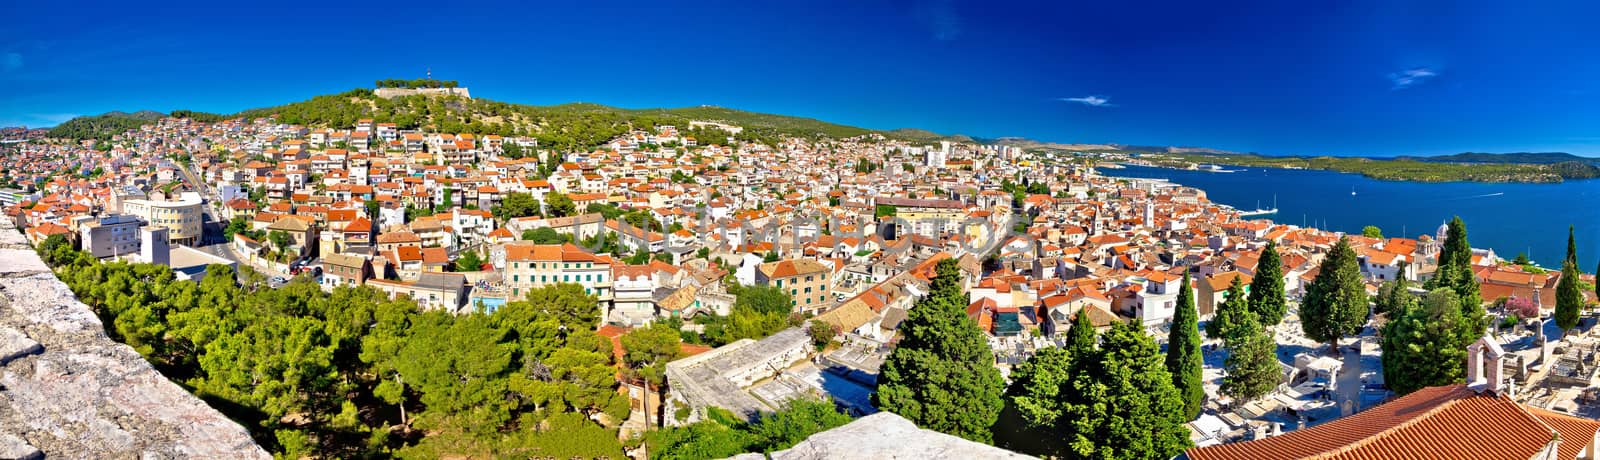 City of Sibenik rooftops panorama, Dalmatia, Croatia